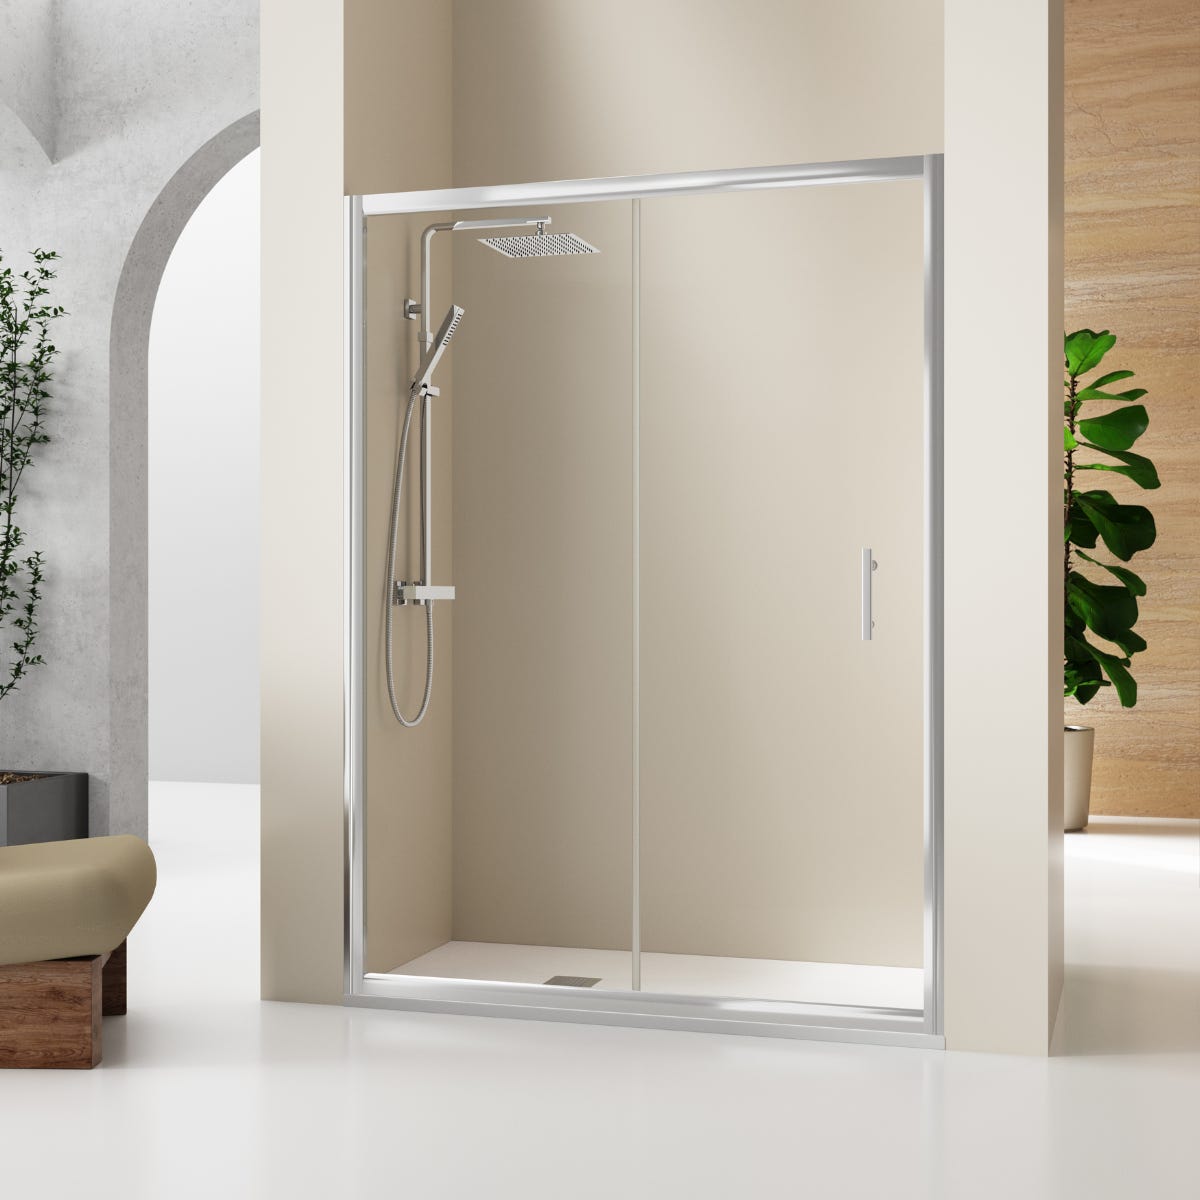 Mampara ducha Frontal de cristal 1 fijo + 1 puerta + costado fijo ✓